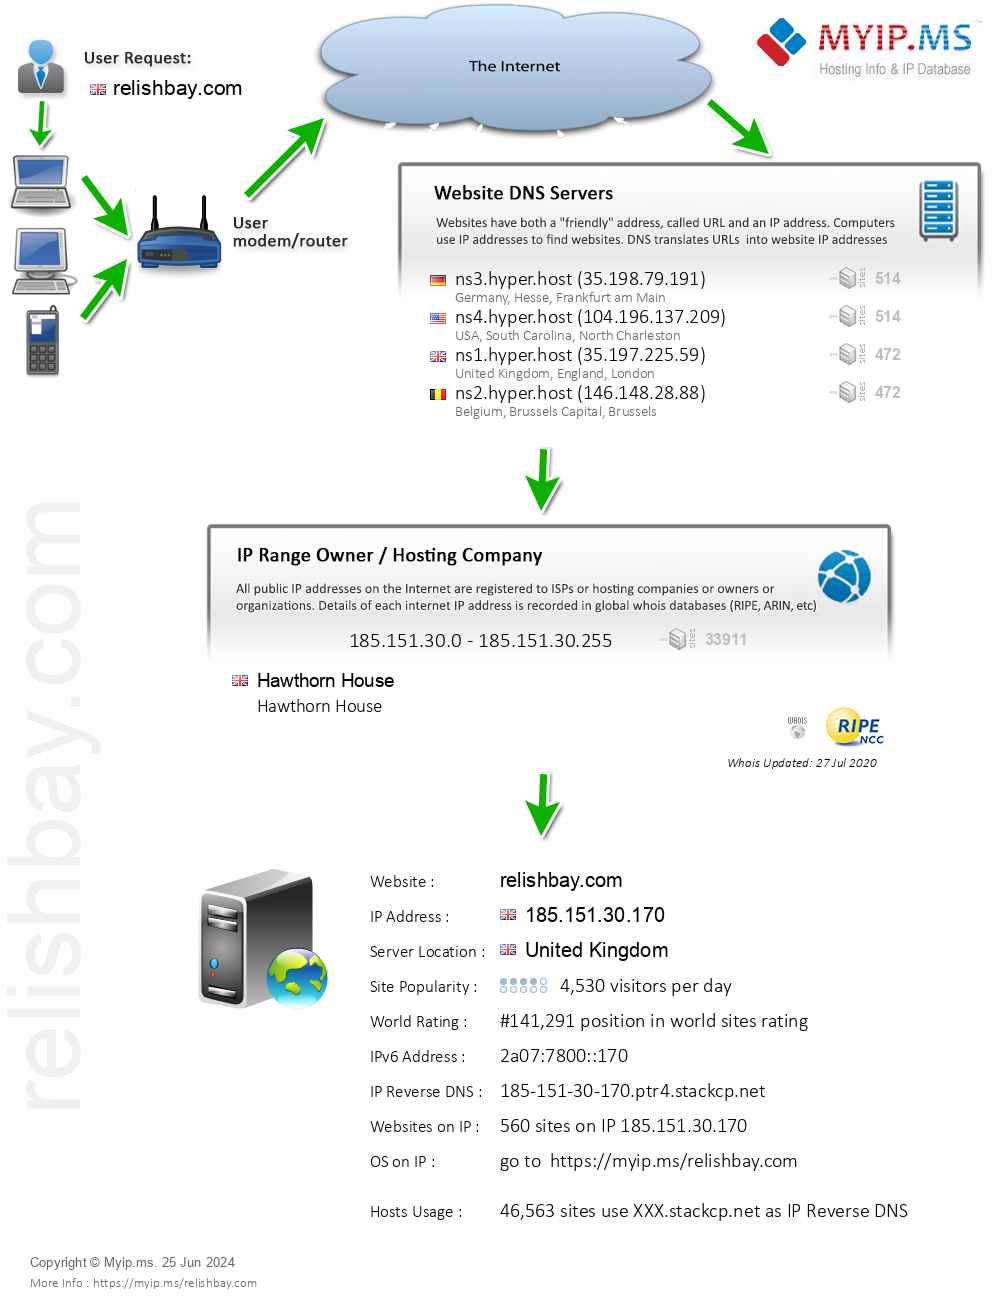 Relishbay.com - Website Hosting Visual IP Diagram